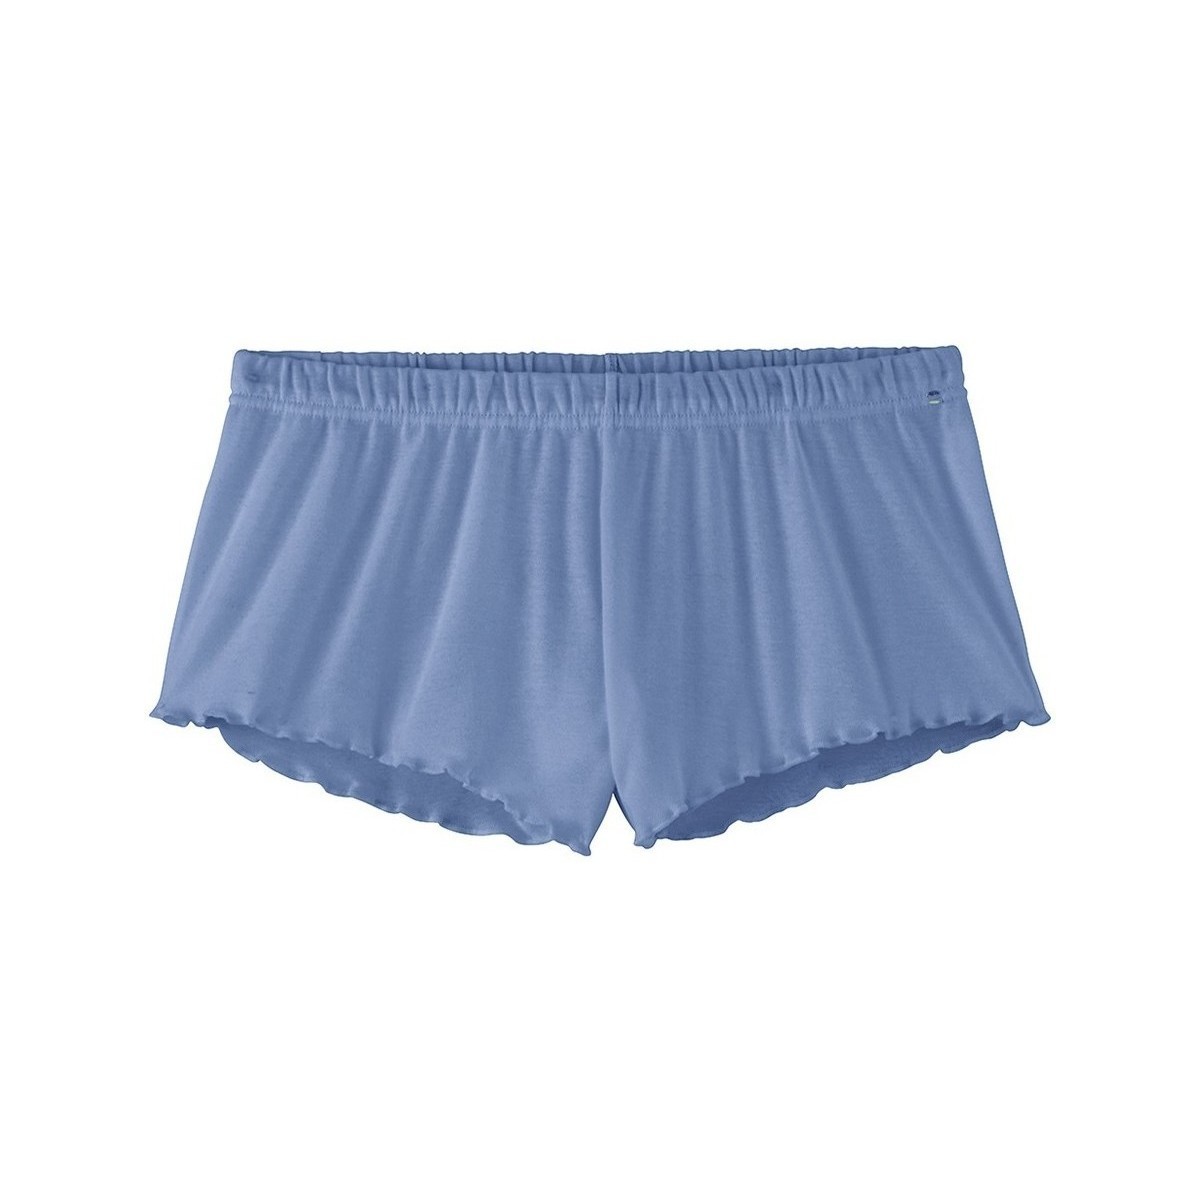 Vêtements Femme Shorts / Bermudas Achel Par Lemahieu Short coton Bio Bleu